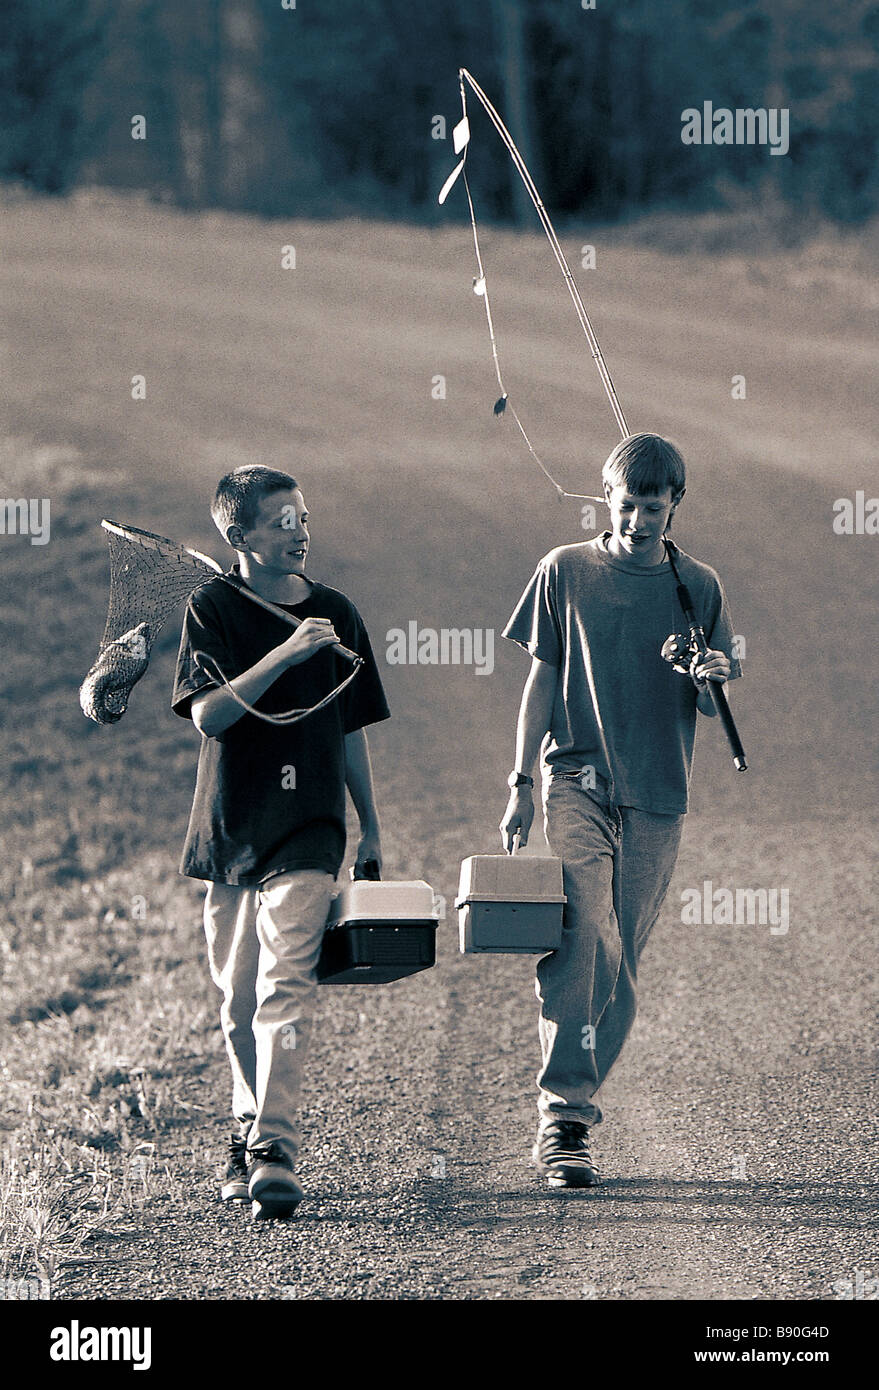 FL2837, DARWIN WIGGETT; Two boys walking fishing gear Stock Photo